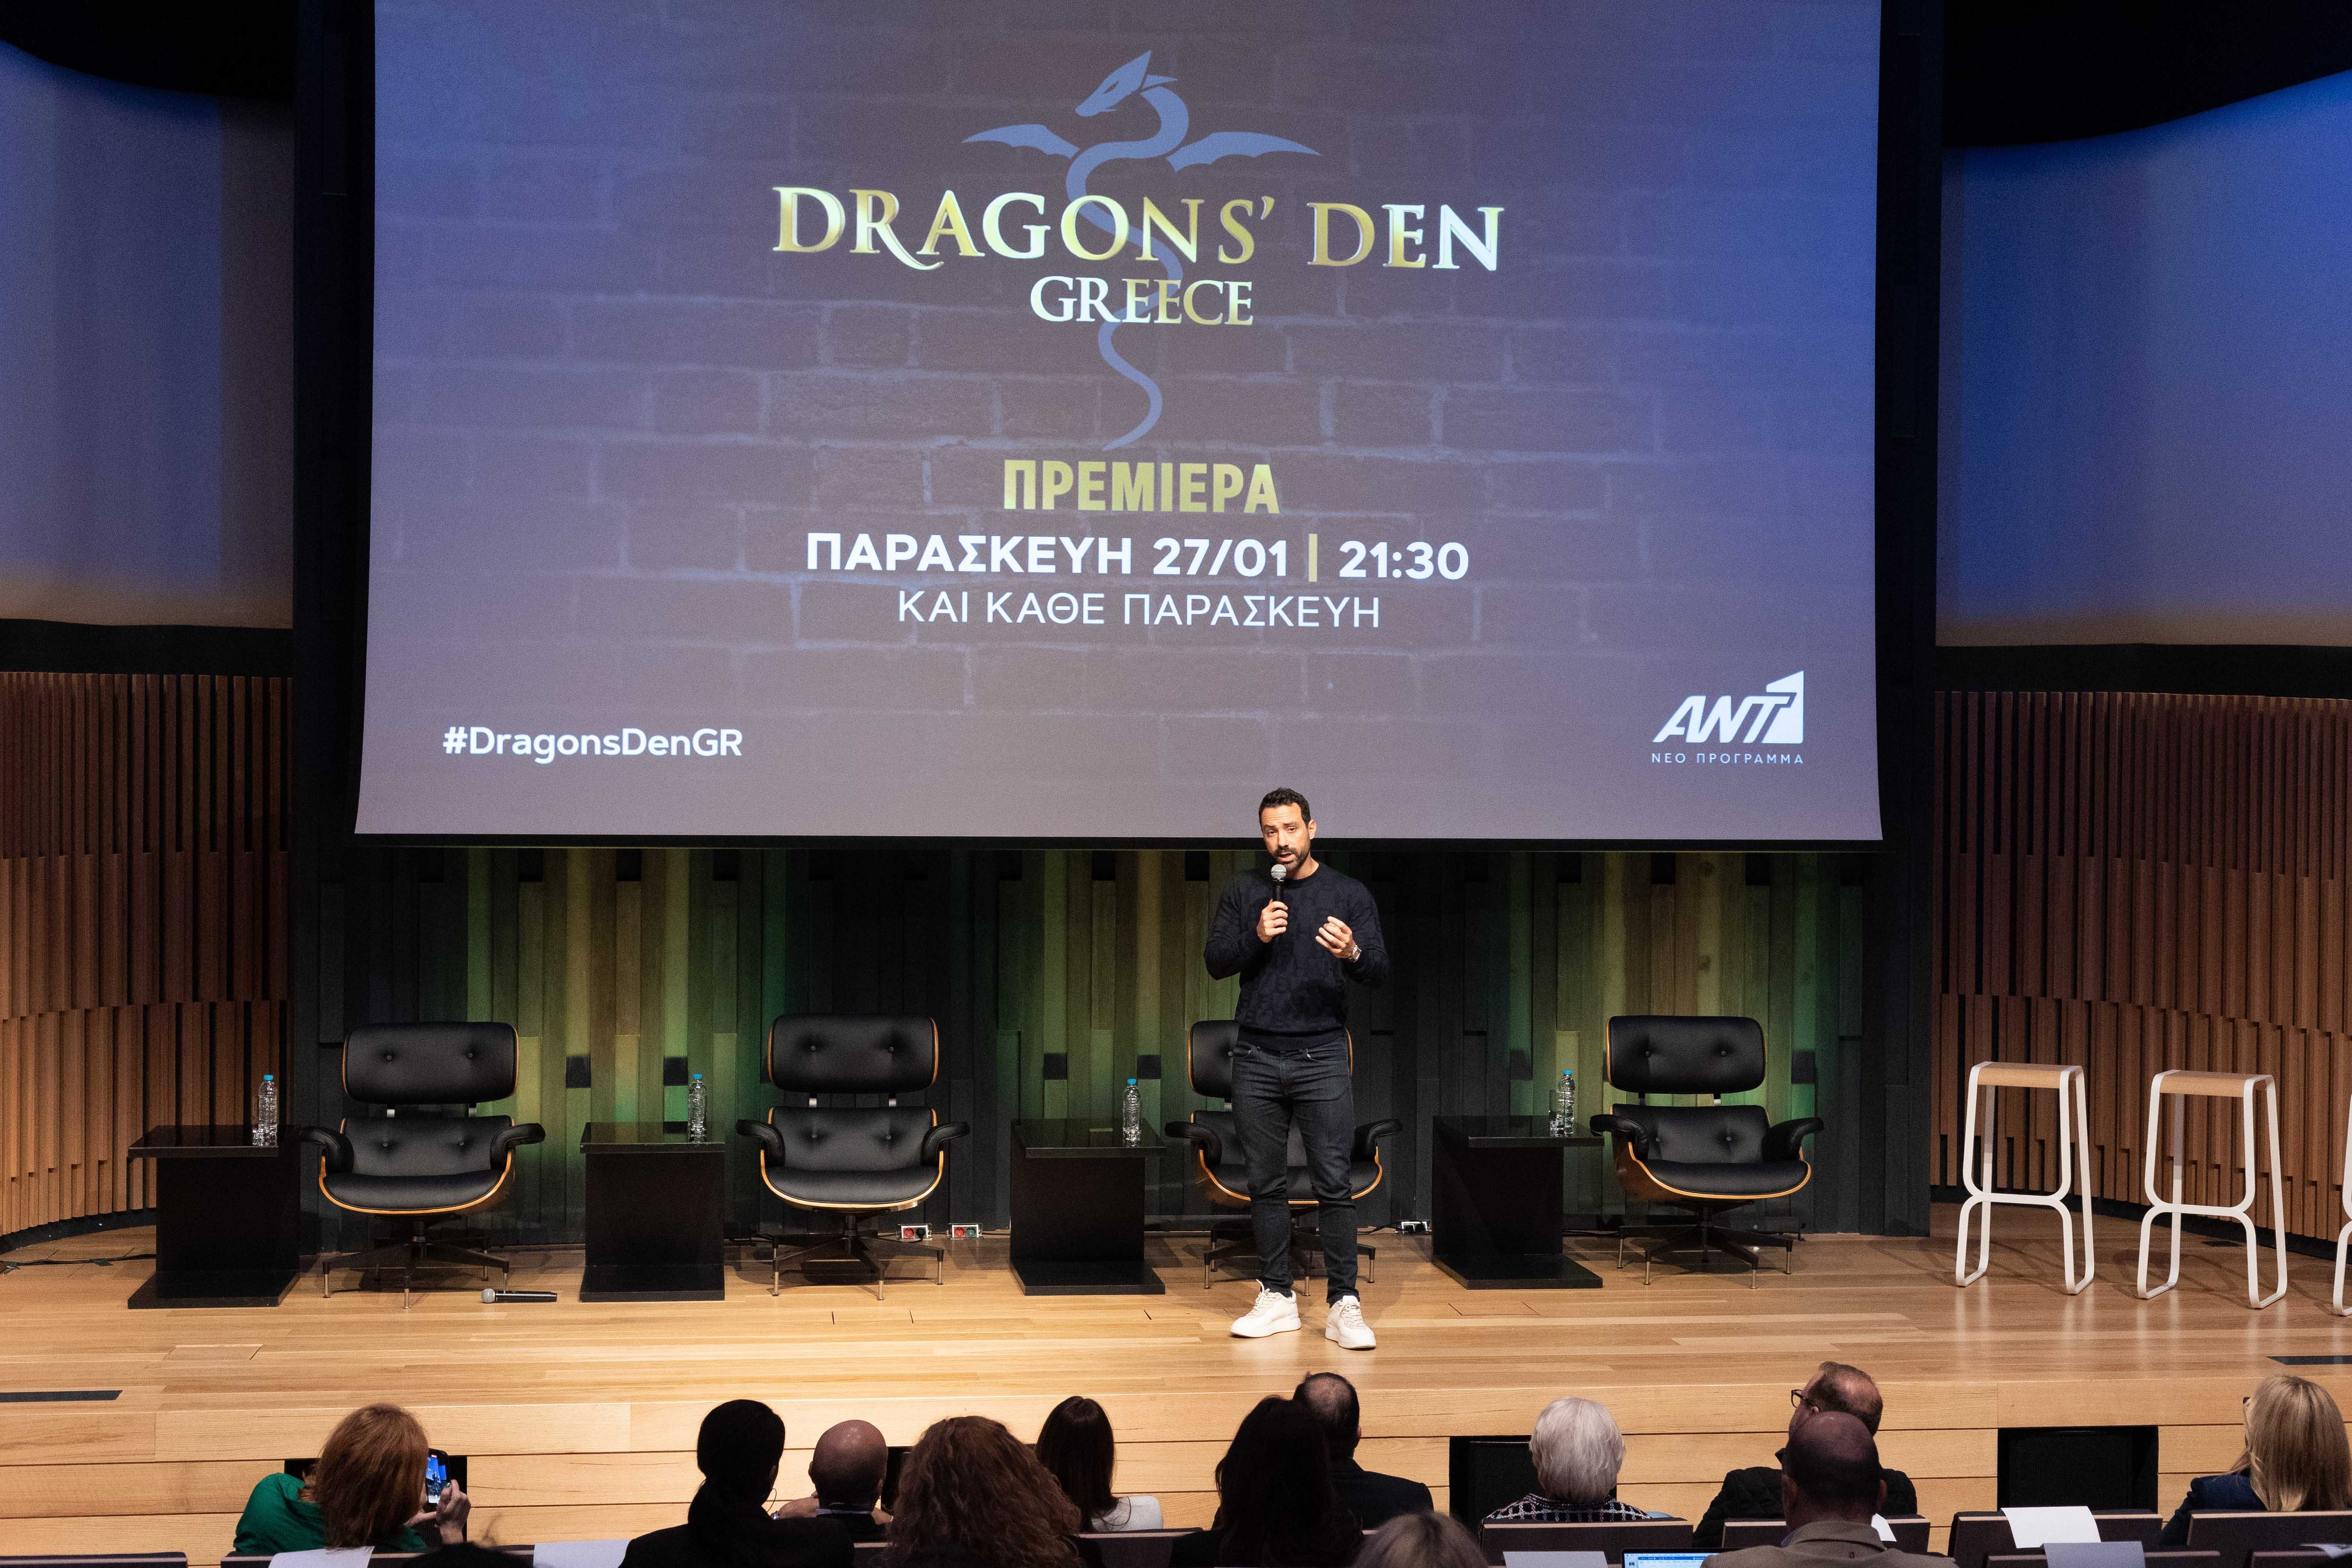 Dragons’ Den: Όσα είδαμε στη συνέντευξη τύπου του νέου show επενδύσεων και επιχειρηματικότητας του ΑΝΤ1 